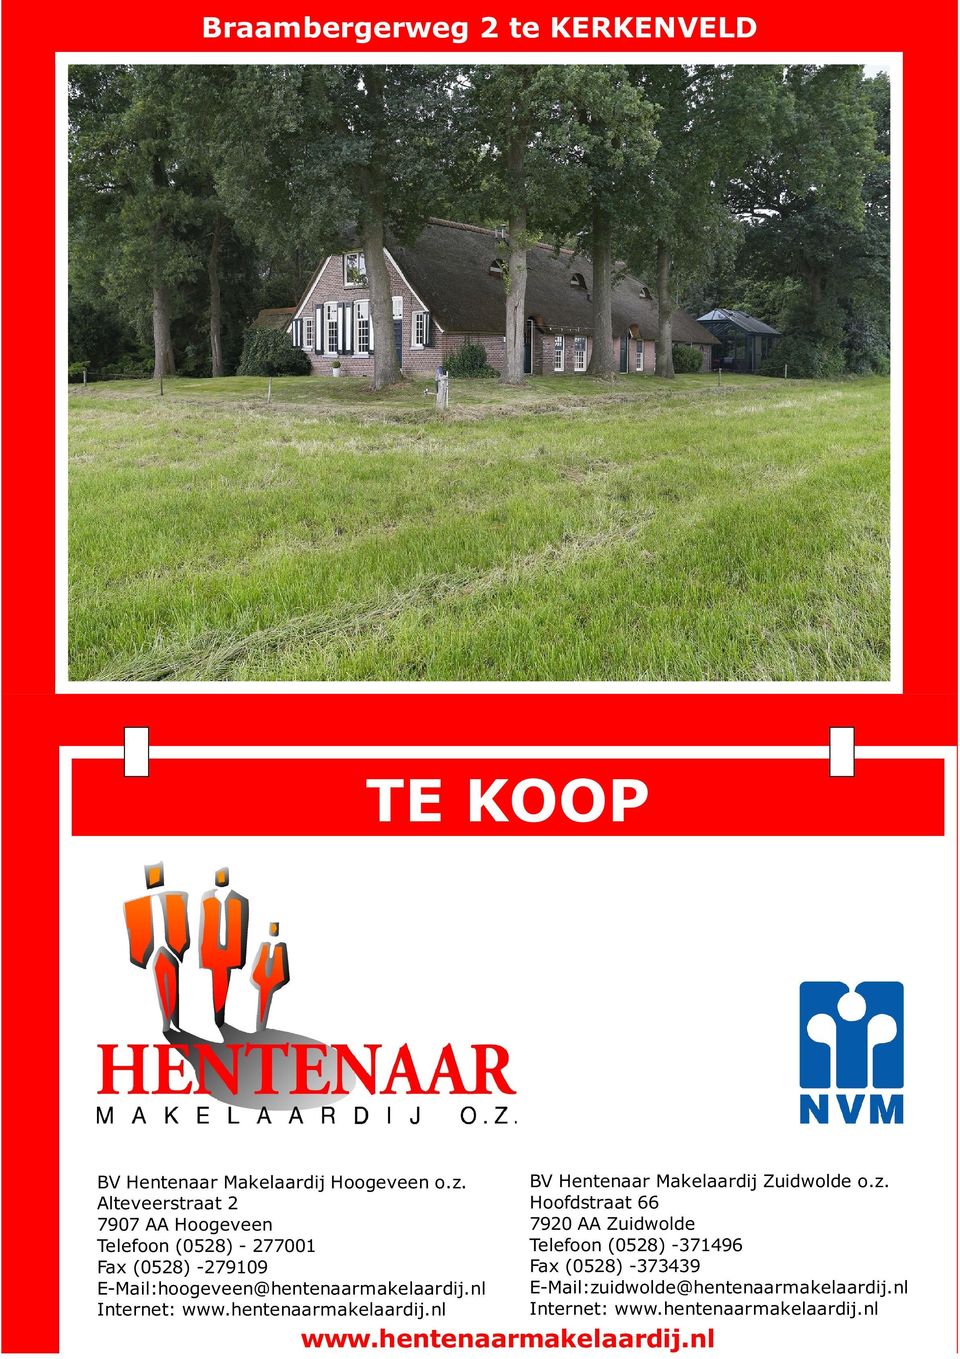 nl Internet: www.hentenaarmakelaardij.nl BV Hentenaar Makelaardij Zuidwolde o.z.